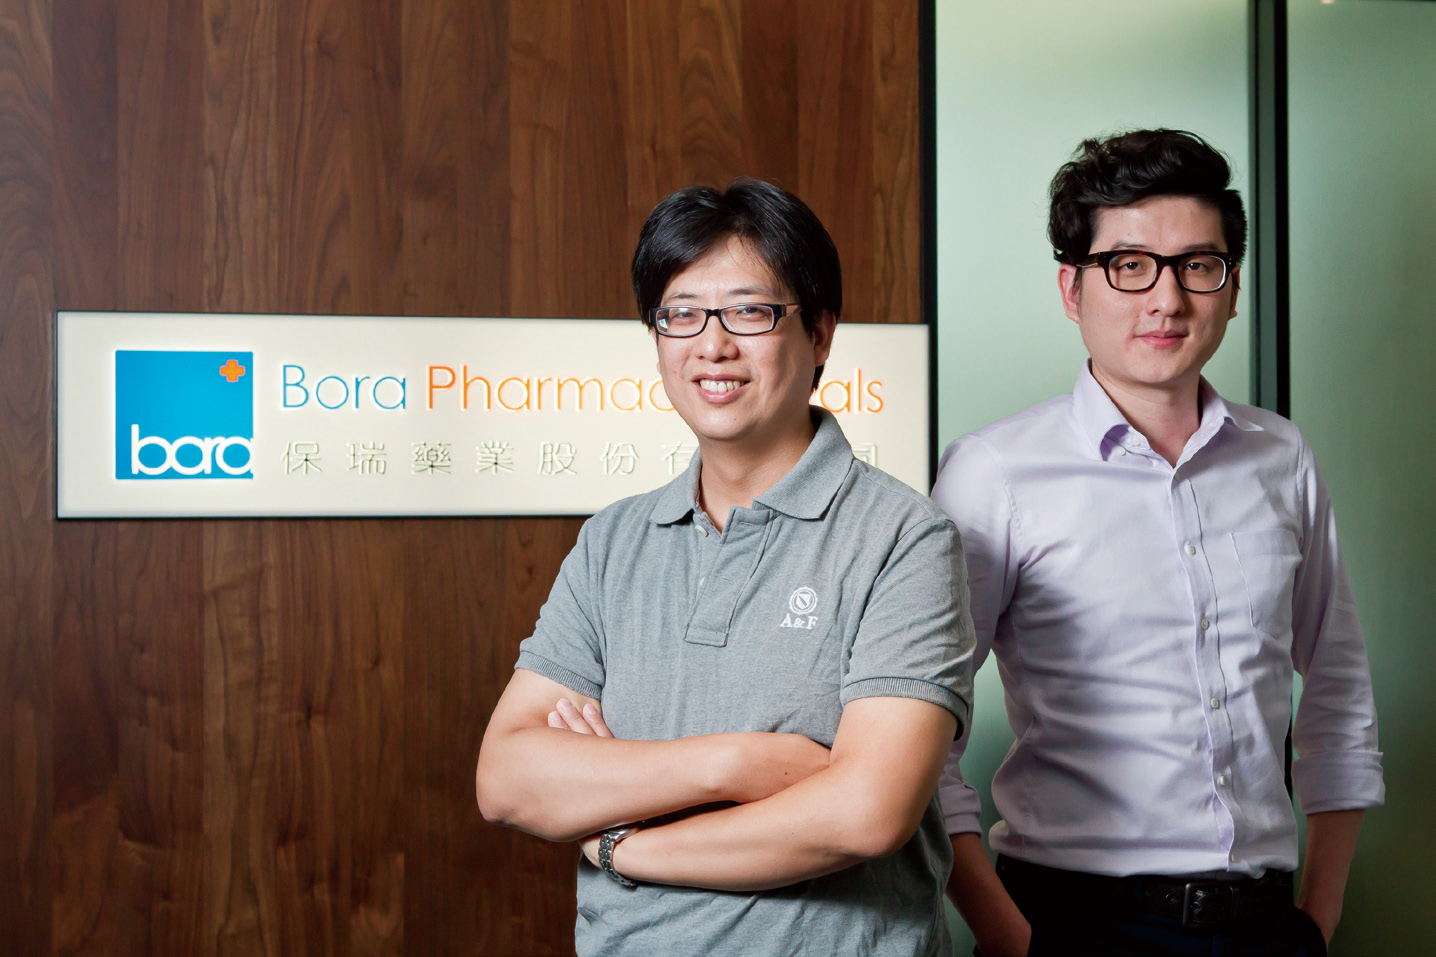 保瑞藥業資訊部經理吳柏松(左)與資訊部技術副理徐鳳翔。